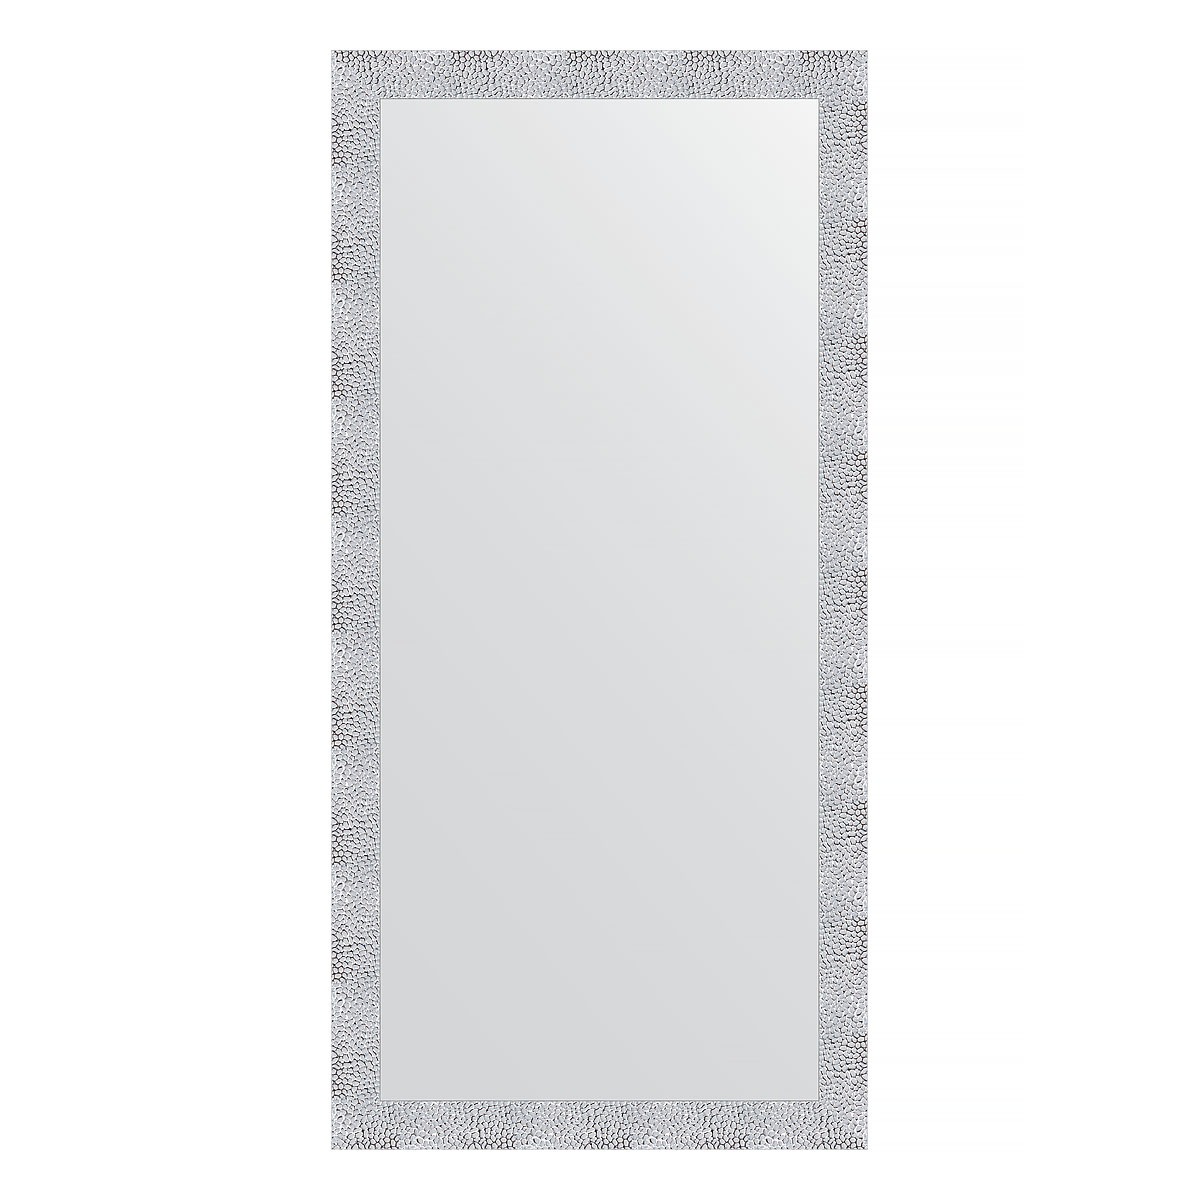 Зеркало в багетной раме Evoform чеканка белая 70 мм 76x156 см зеркало evoform definite by 3336 76x156 см серебряный дождь